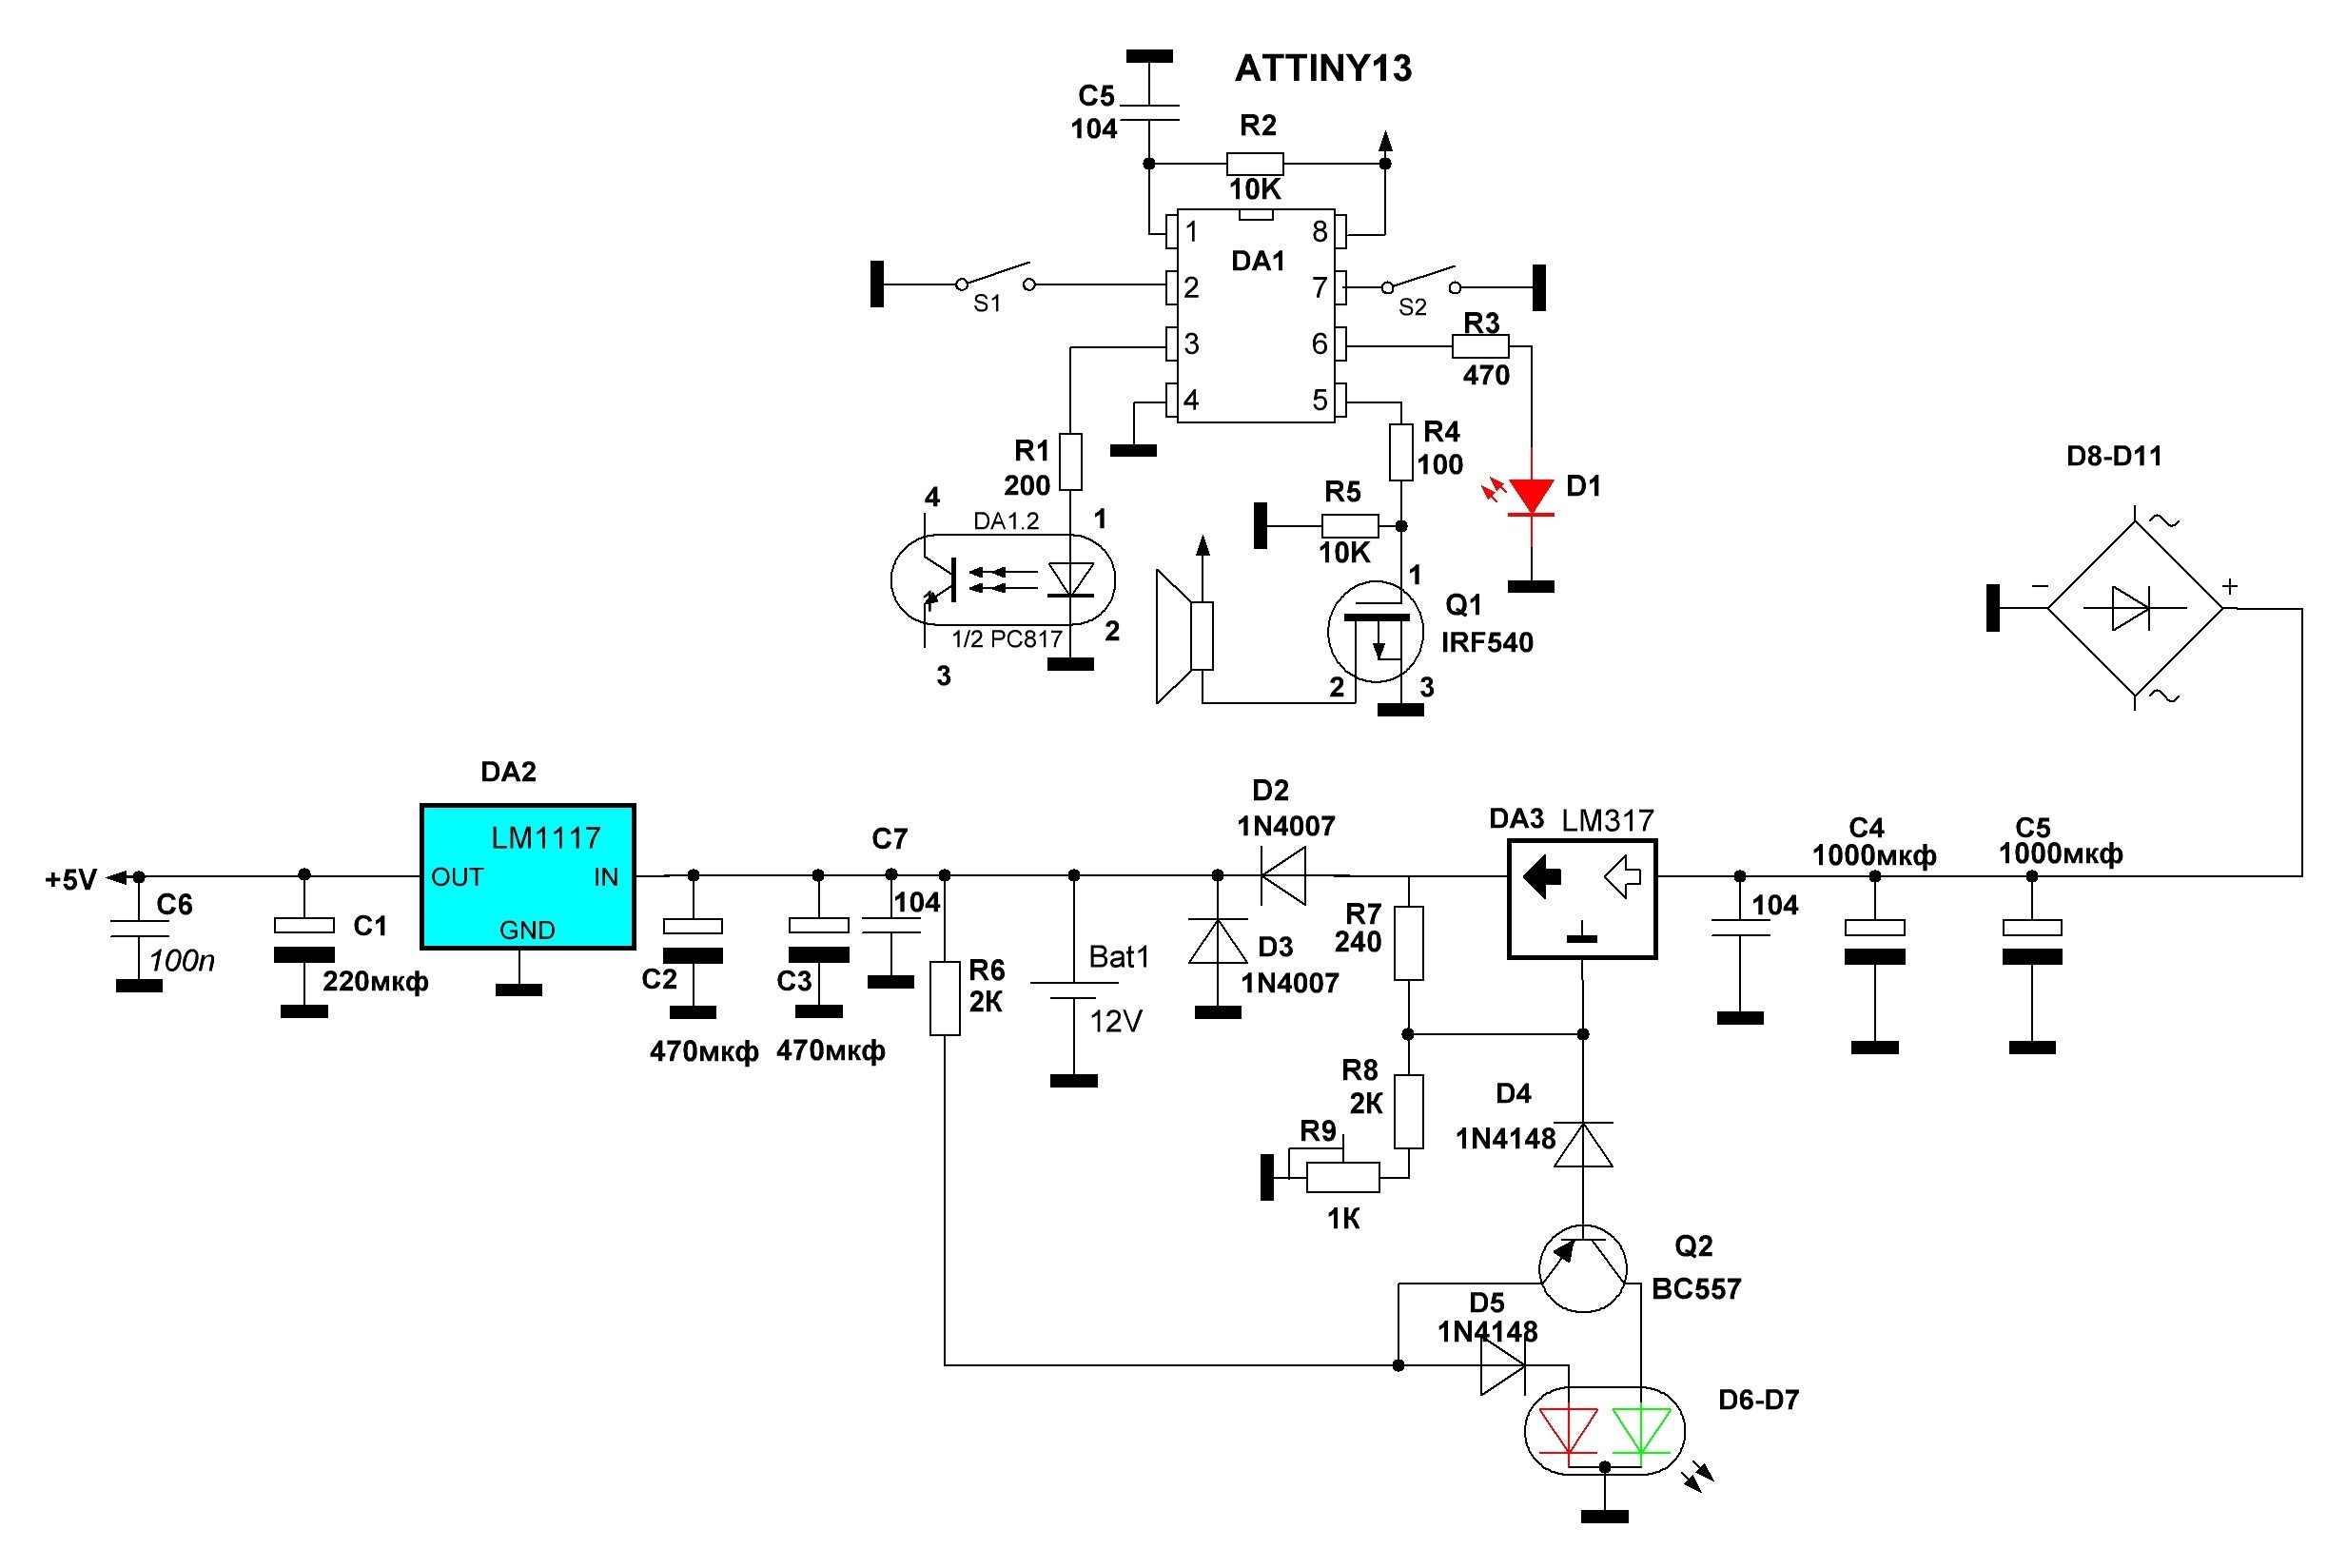 Принципиальная схема сигнализации на микроконтроллере Attiny13